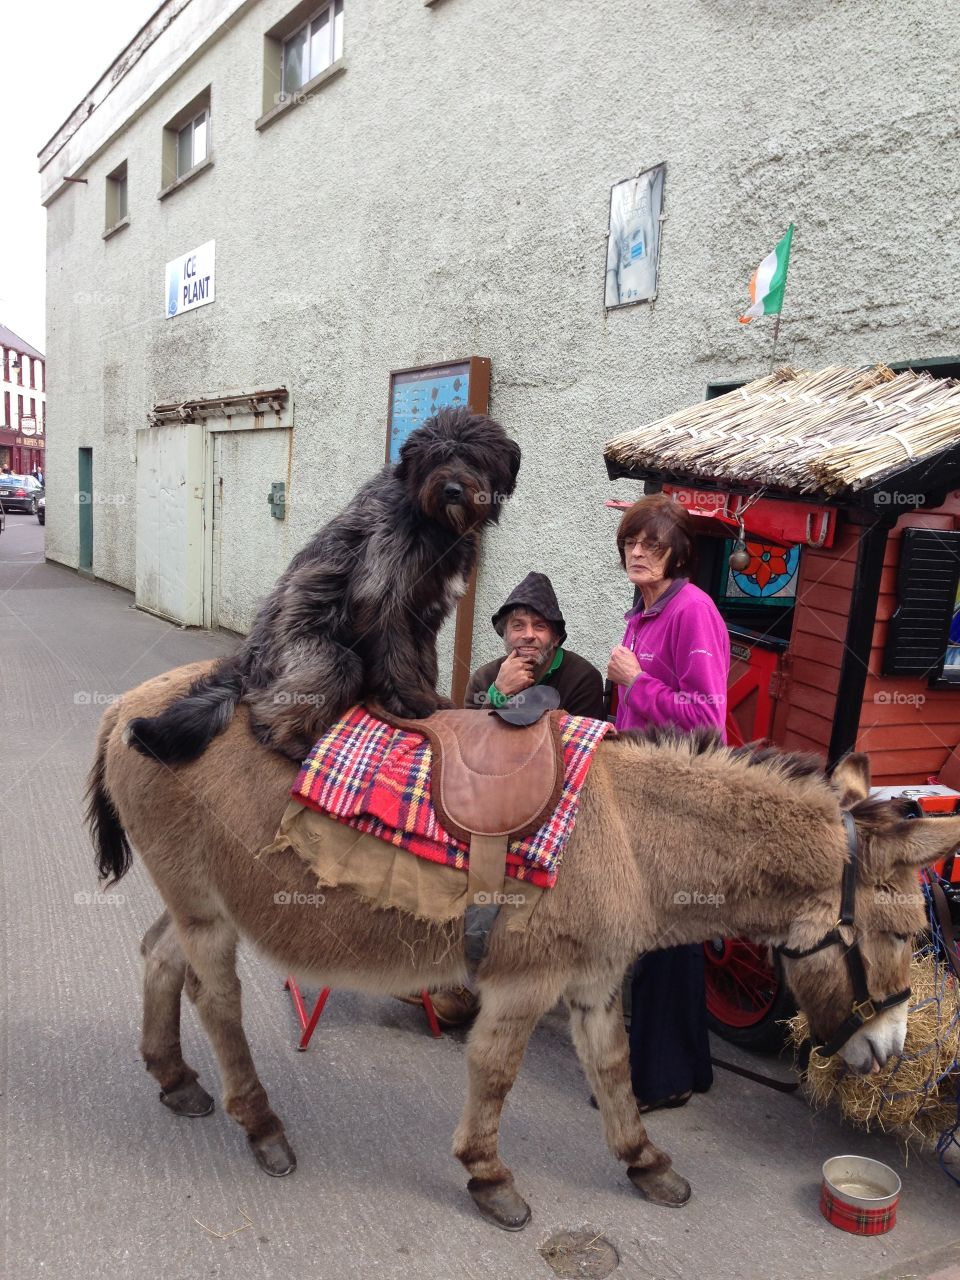 Dog on a donkey, Ireland 